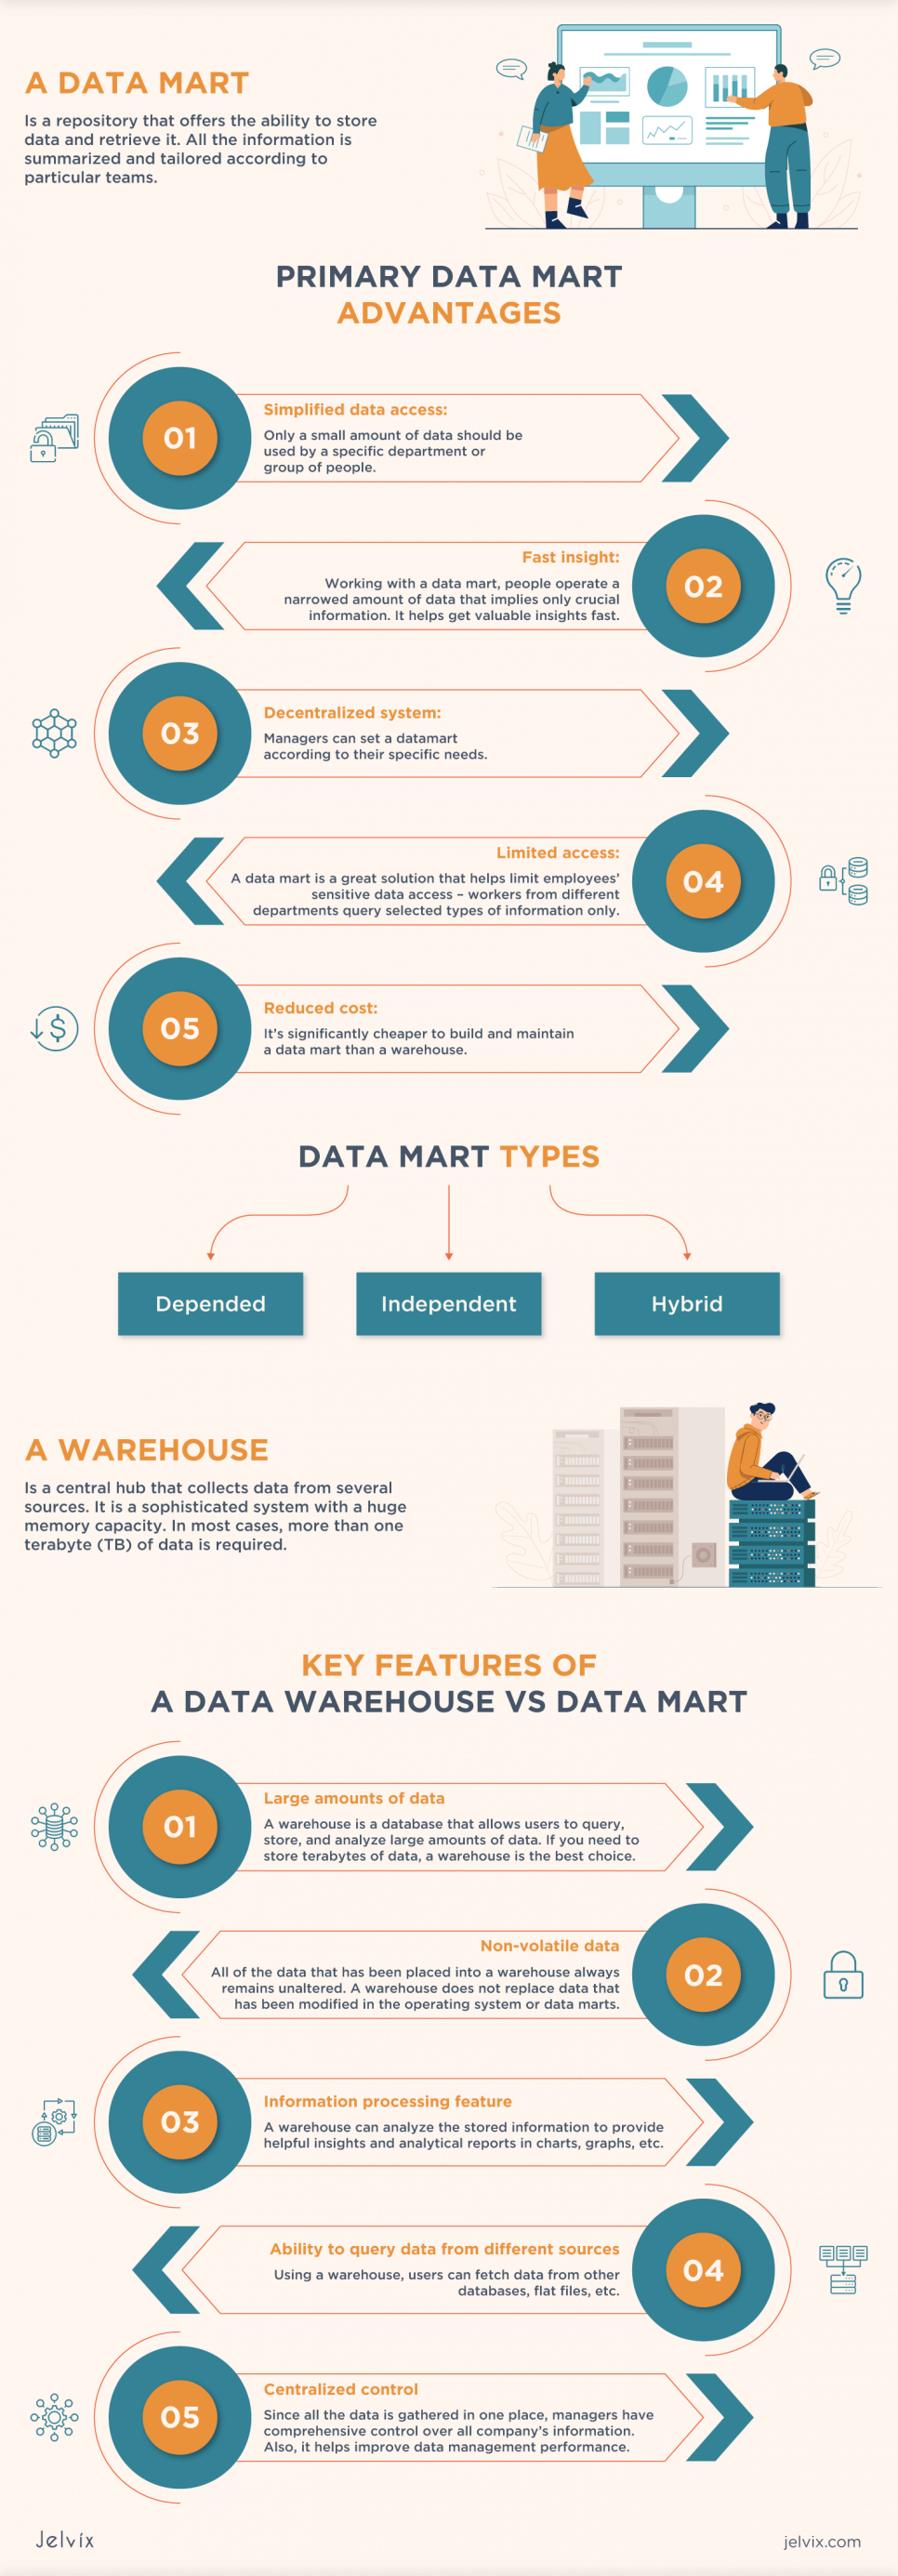 aws data warehouse